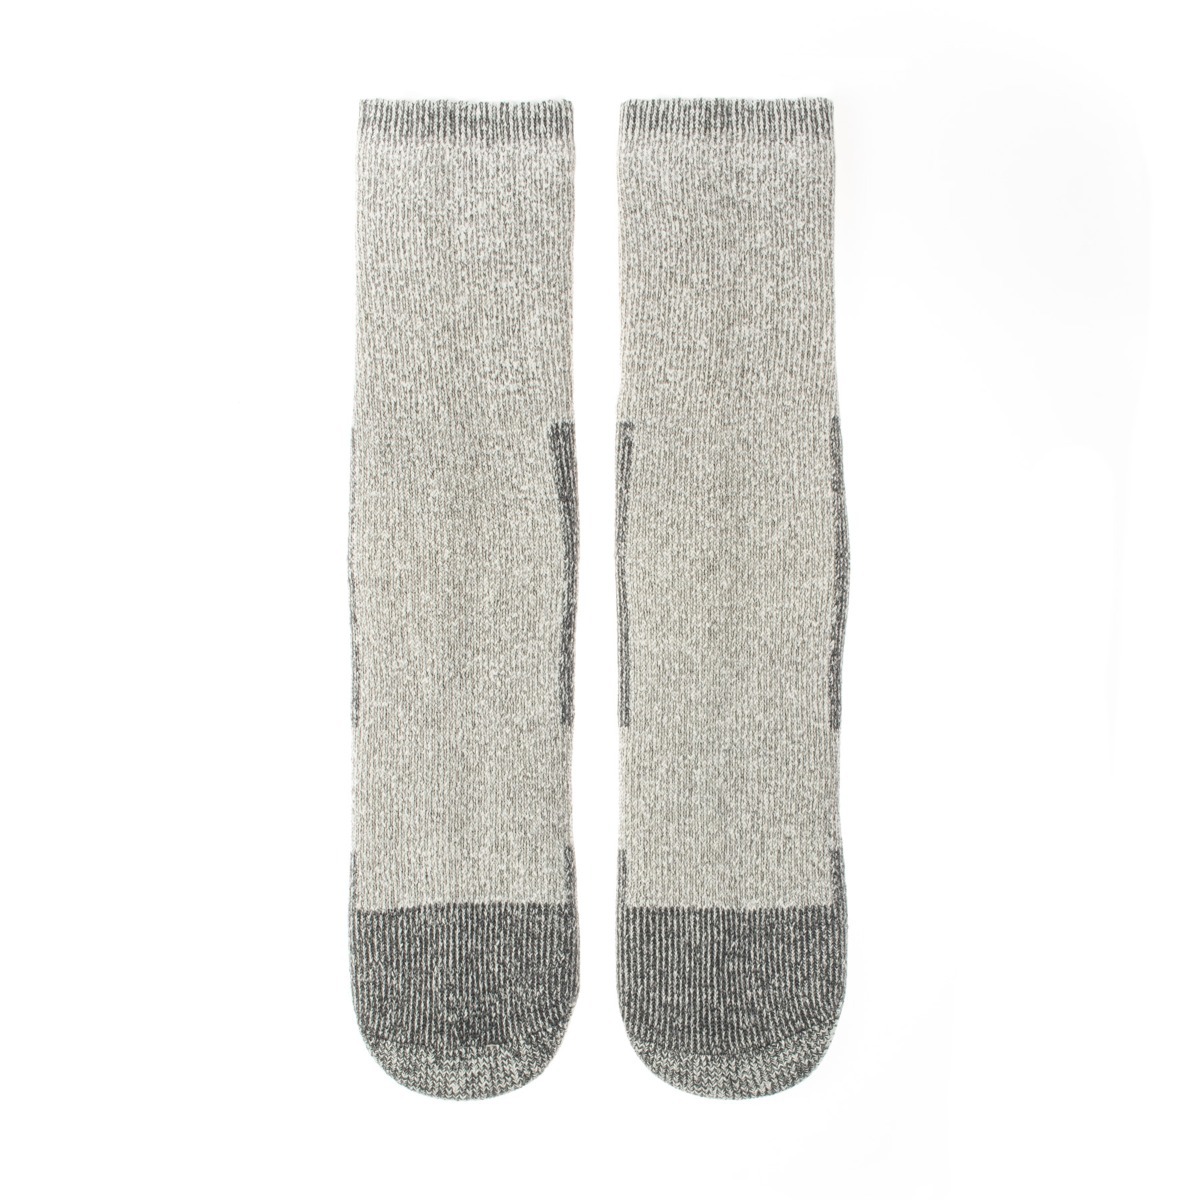 Vlnené ponožky Vlnáč Termo šedý